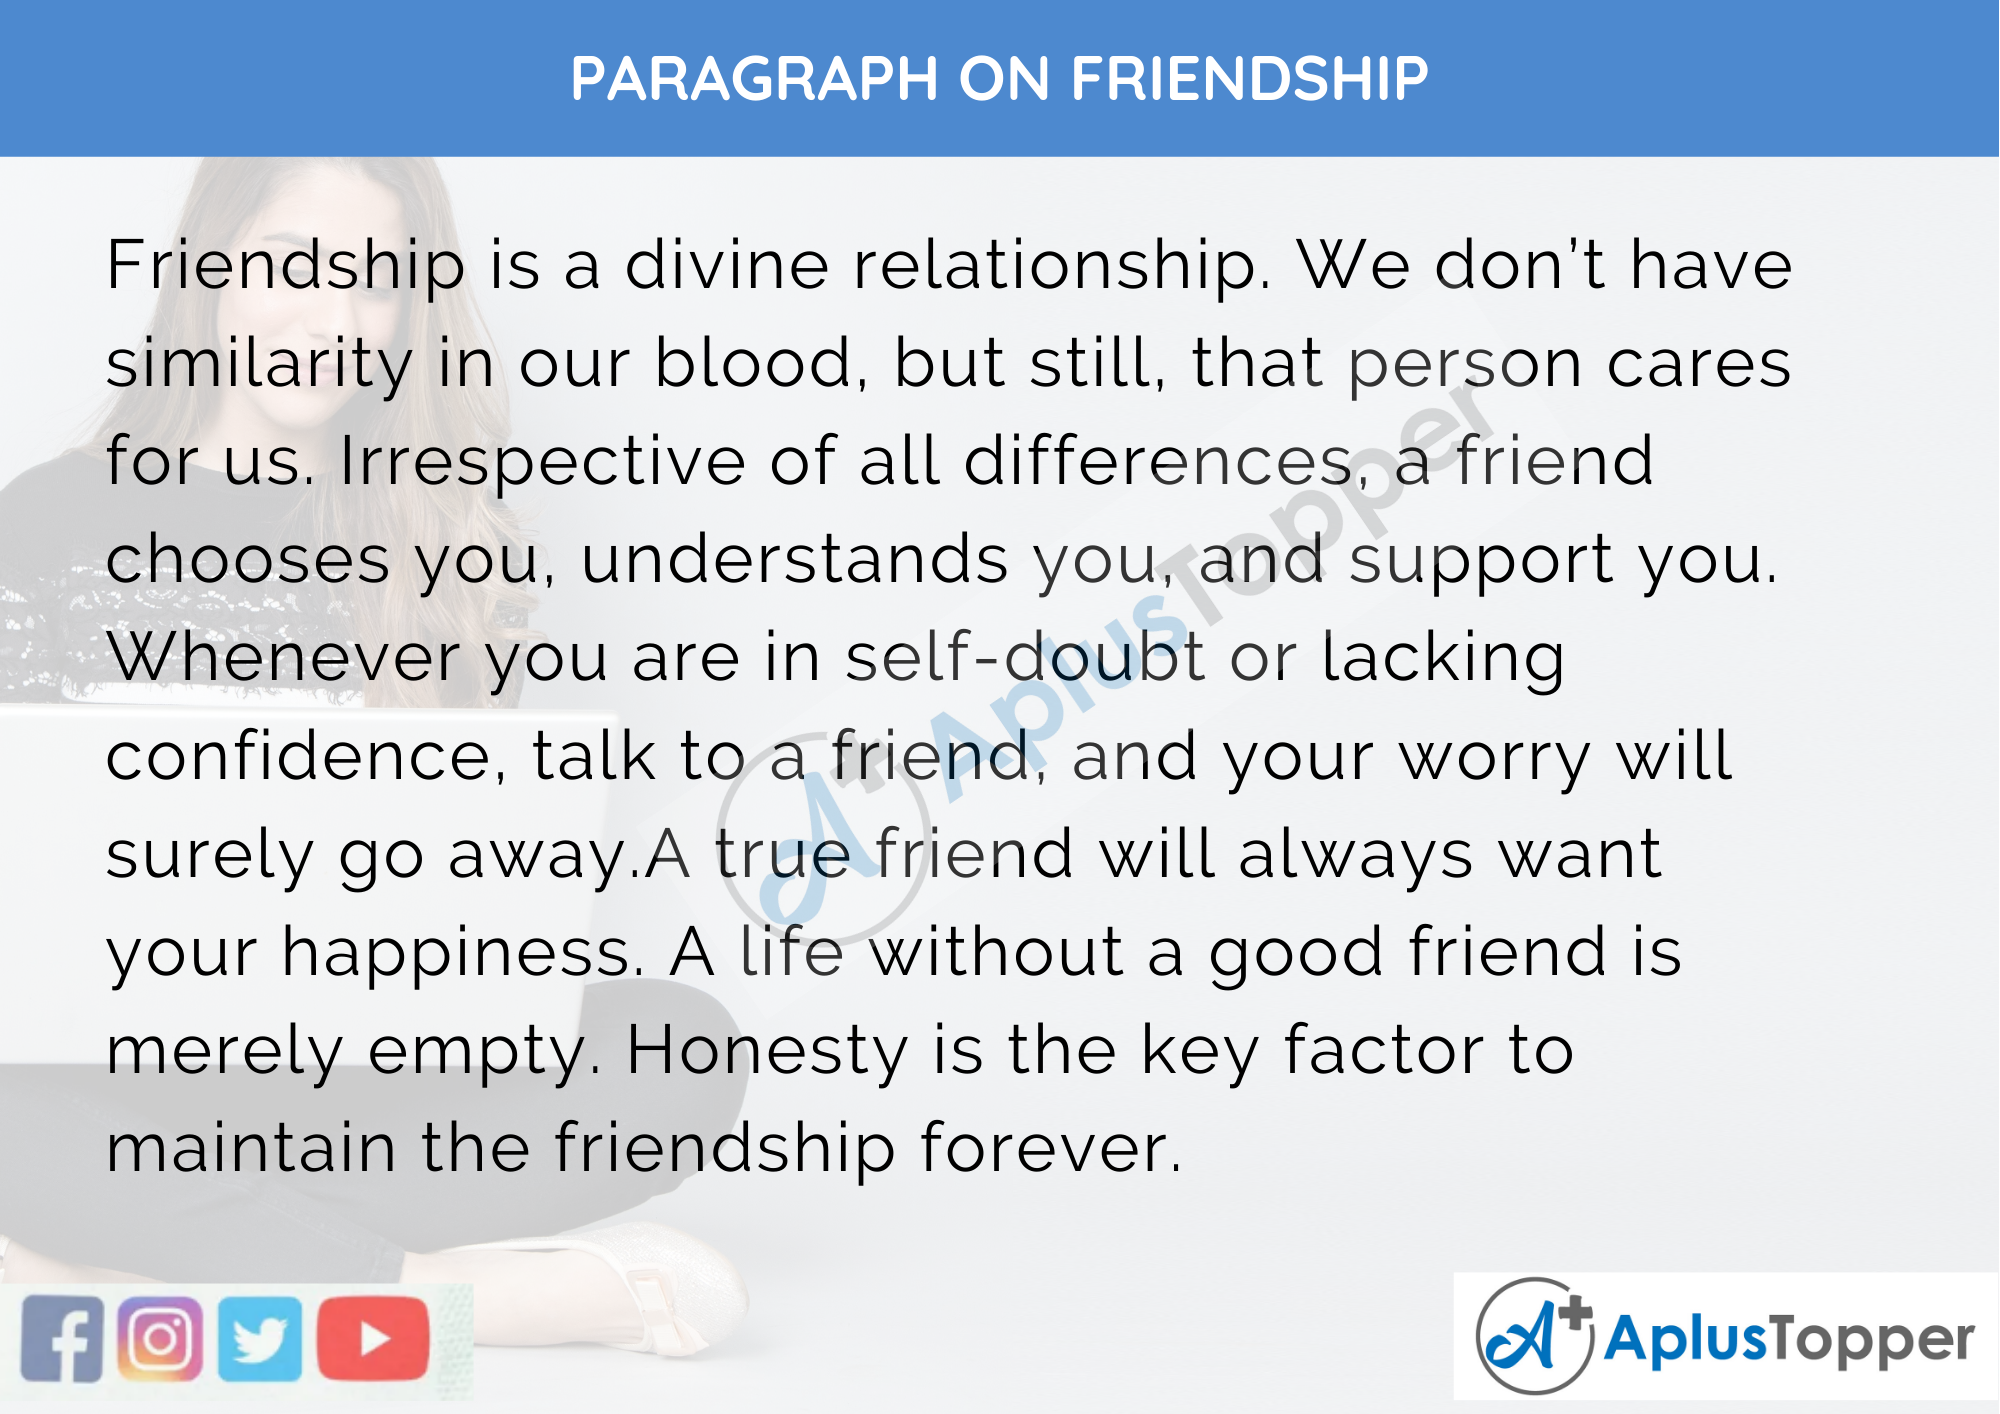 A paragraph about friendship